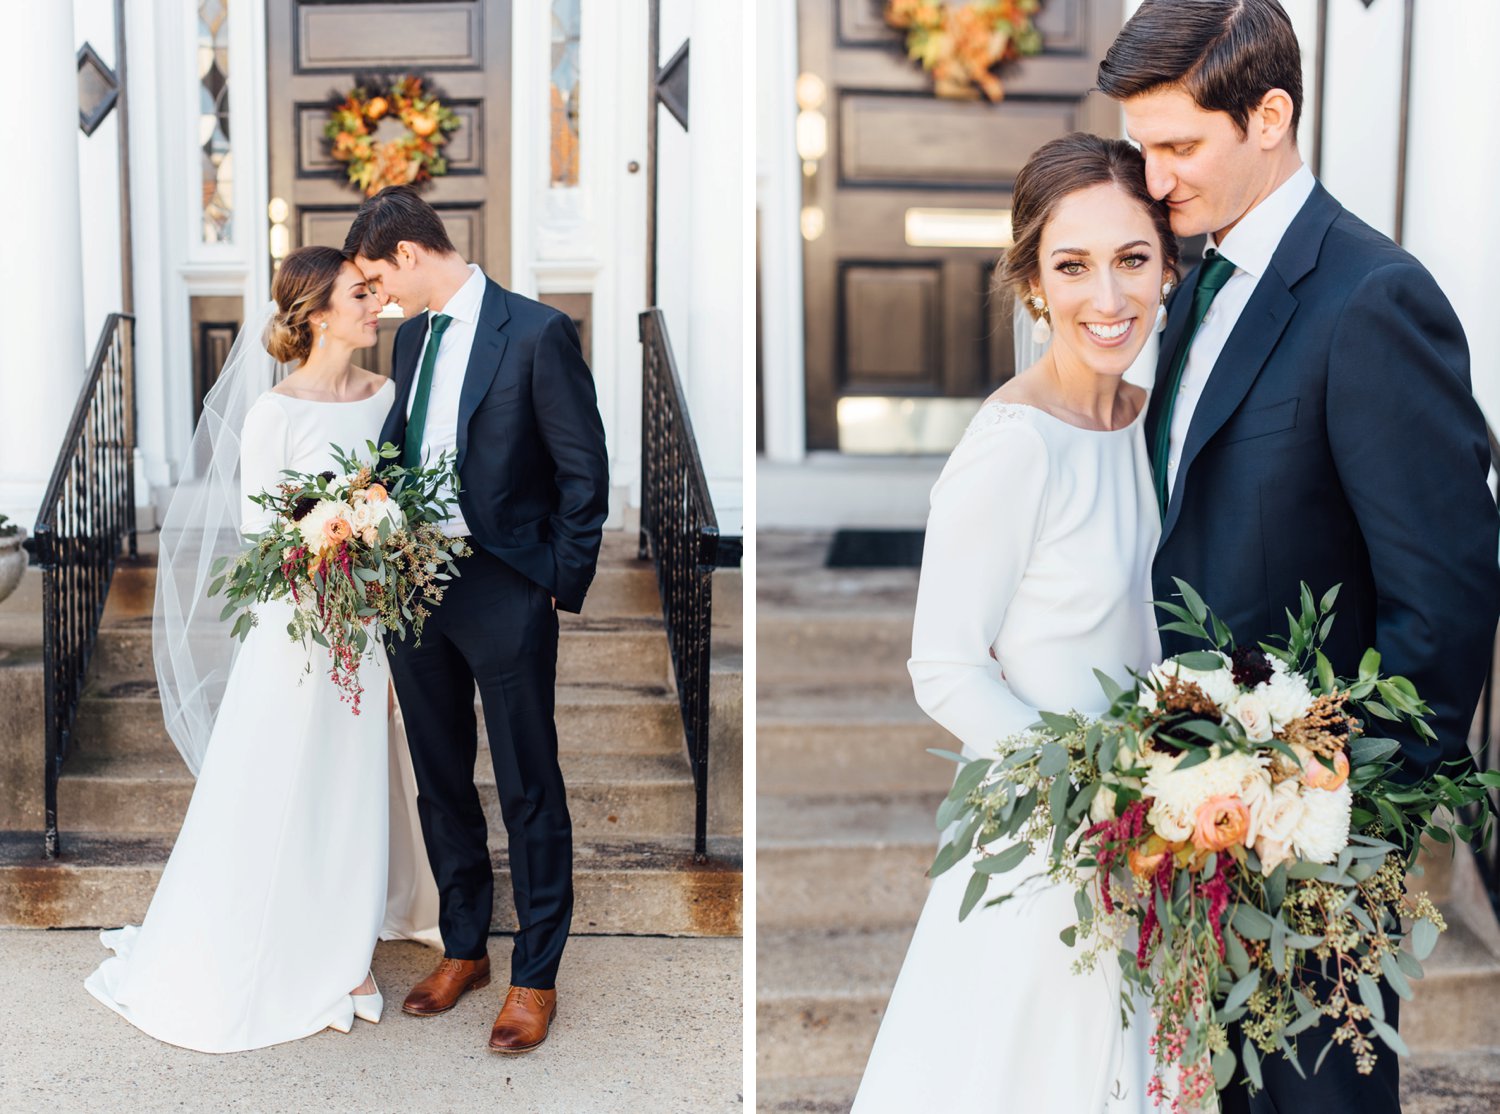 Allison + Jon - Jenkintown Wedding - Philadelphia Wedding Photographer - Alison Dunn Photography photo